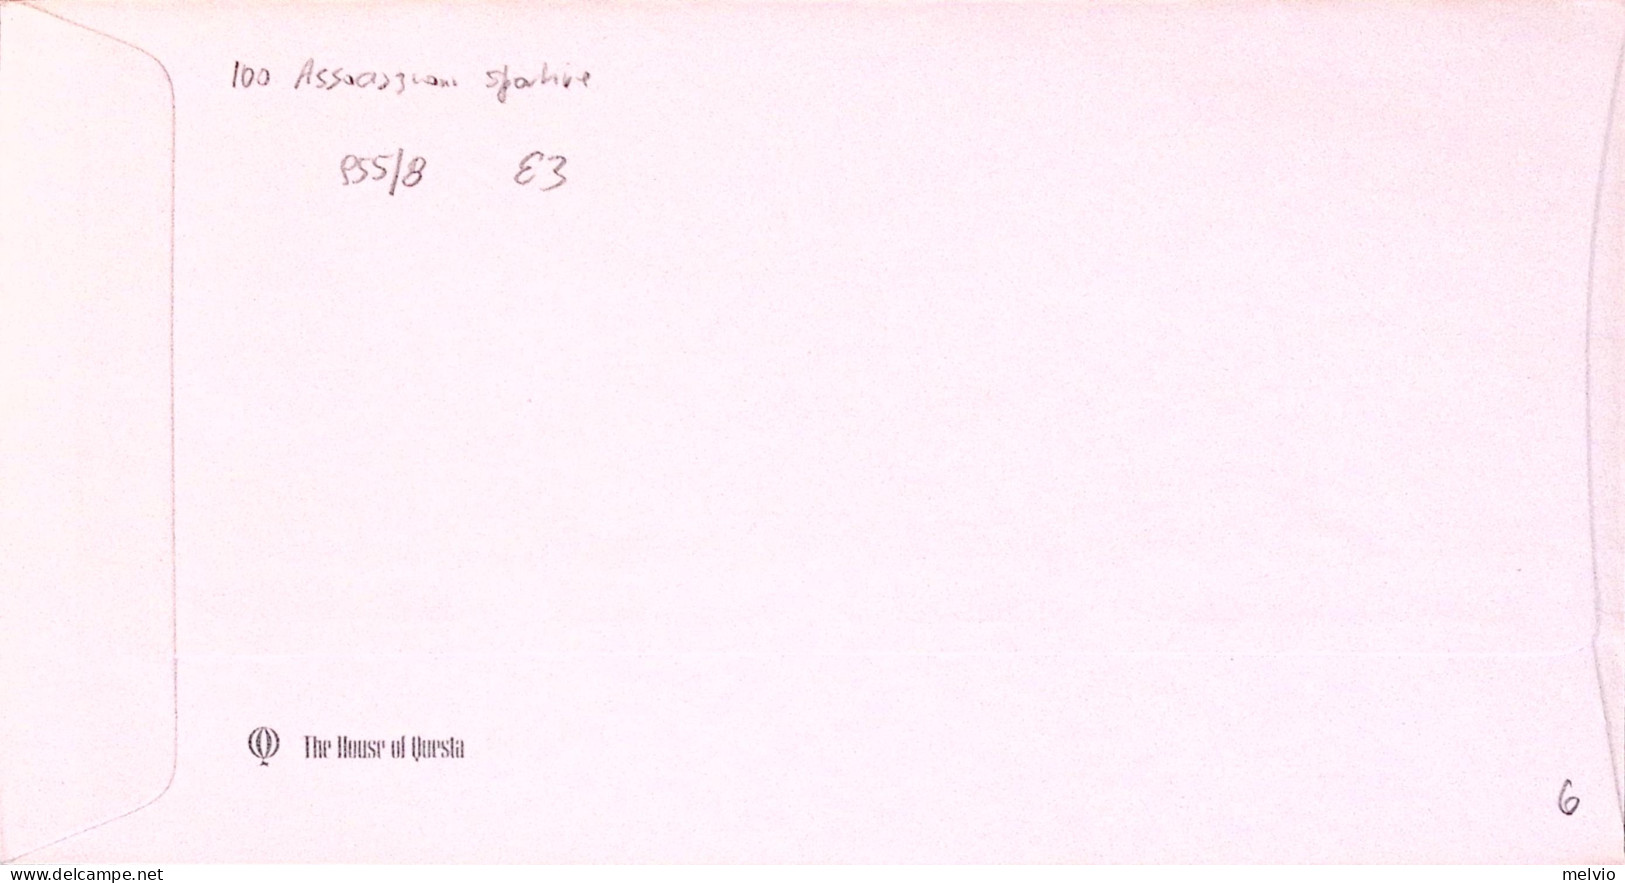 1980-GRAN BRETAGNA GREAT BRITAIN Associazioni Sportive Serie Cpl. (955/8) Fdc - Briefe U. Dokumente